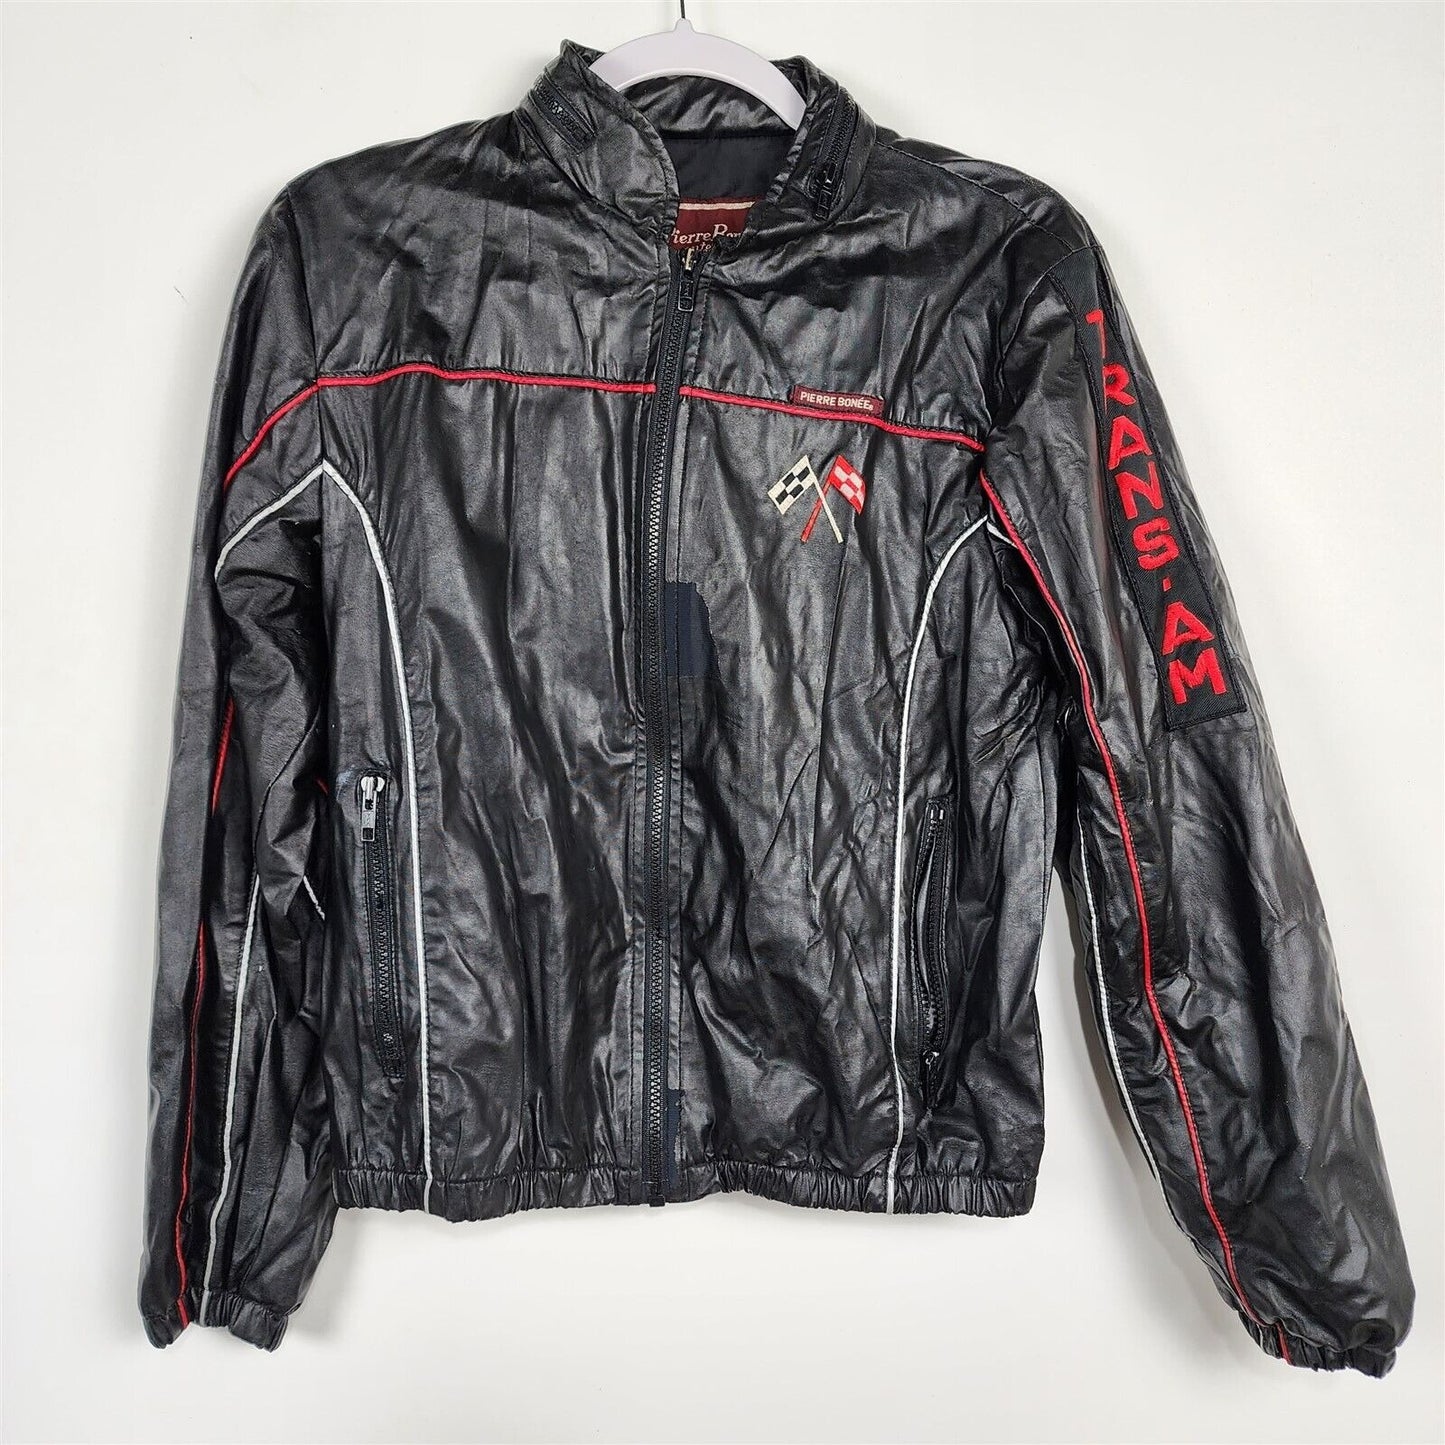 Vintage Pierre Bonee Outerwear Trans Am Racing Jacket Boys Size 18